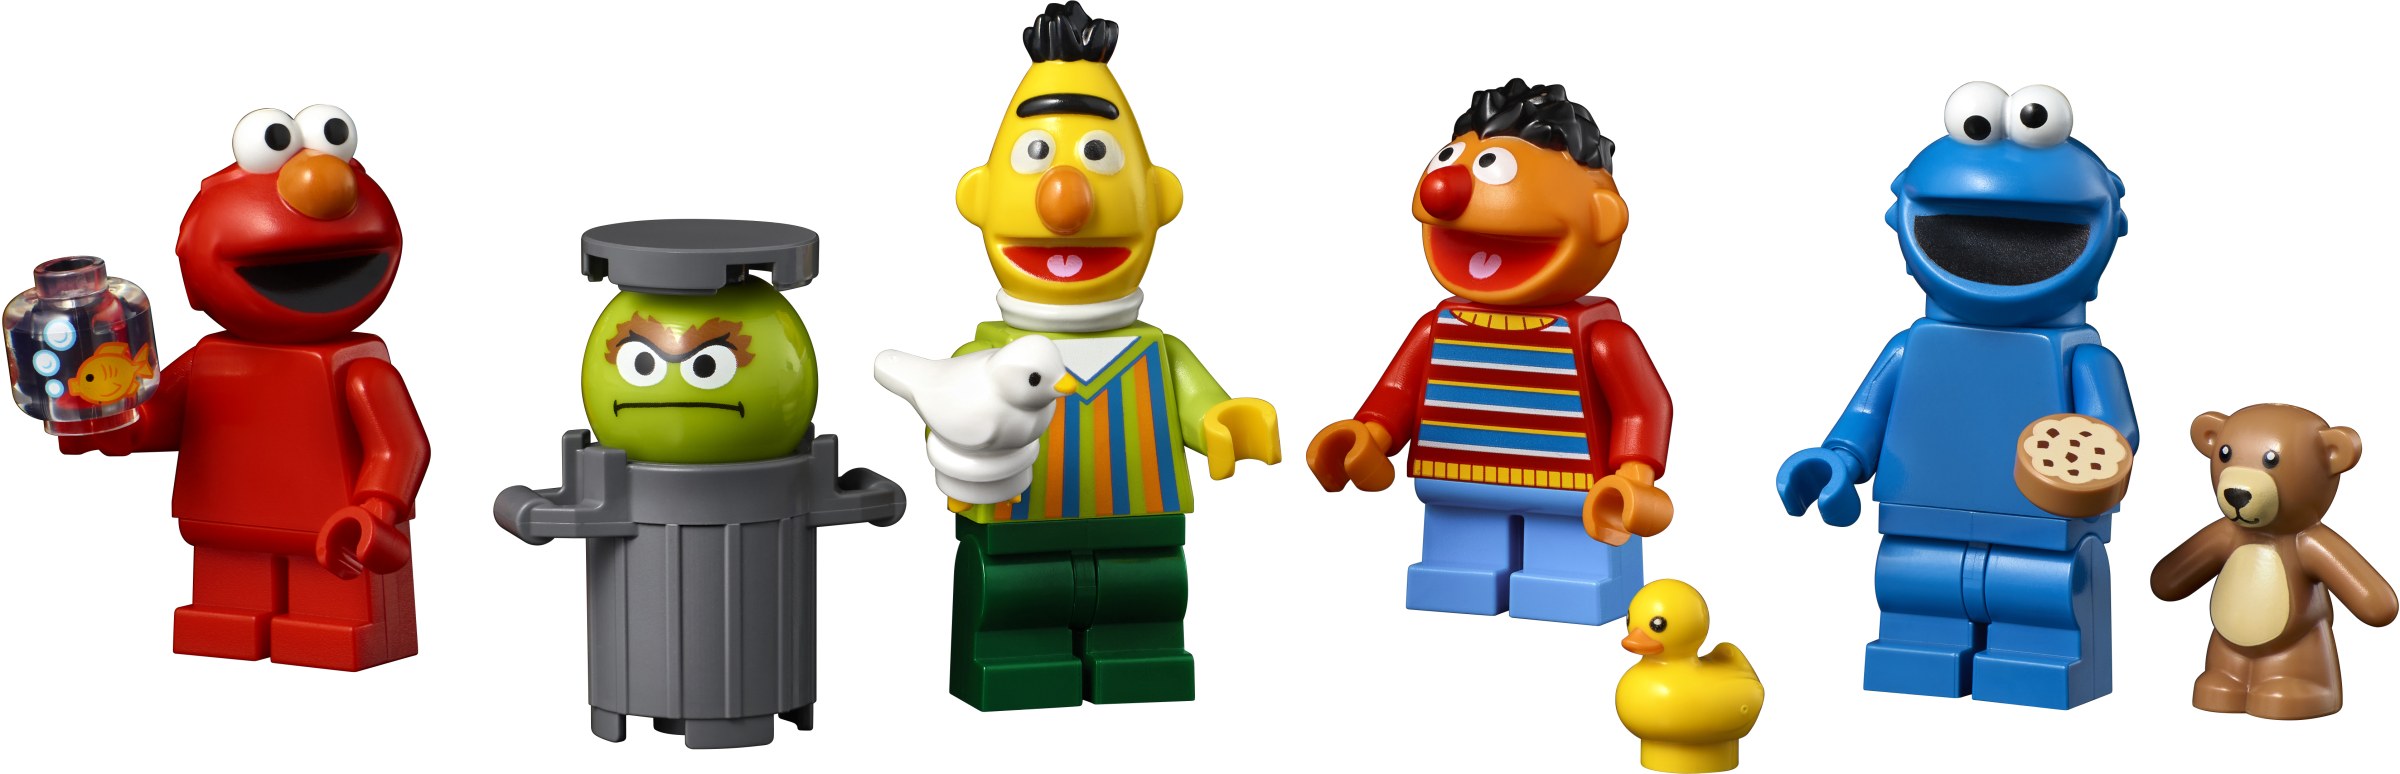 Sesame Street The Next Lego Ideas Set Revealed Brickset Lego Set Guide And Database